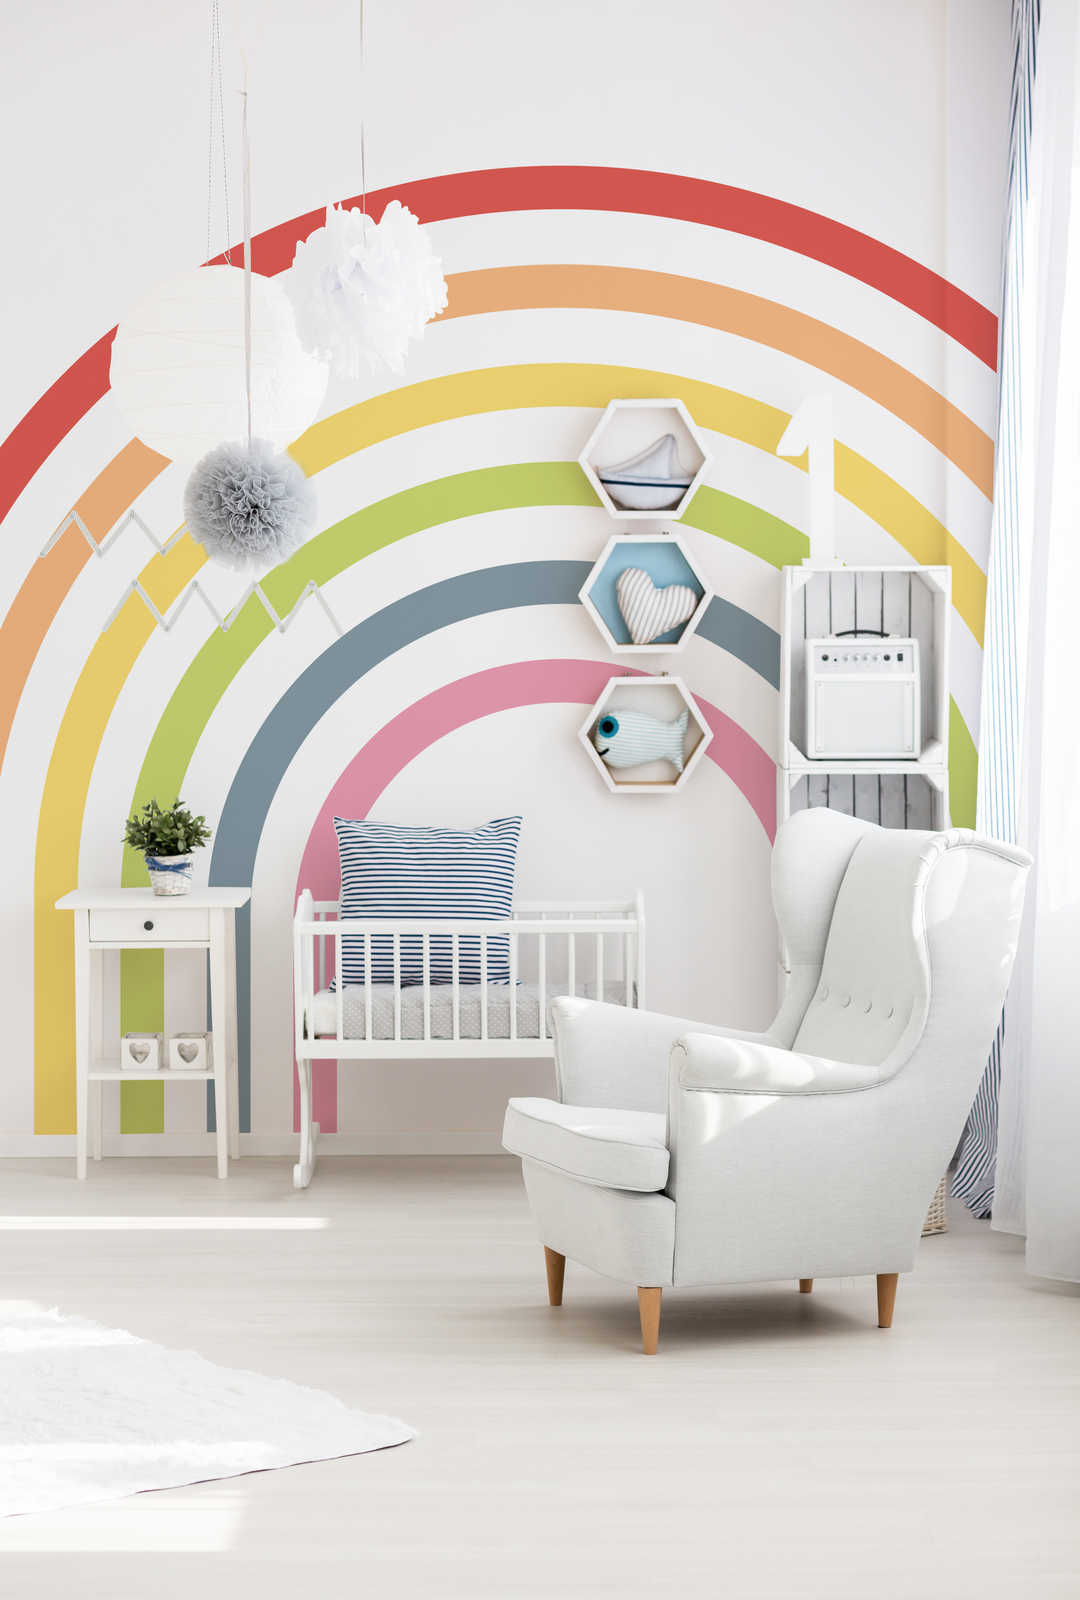 Mural arco iris de colores vivos para la habitación de los niños
